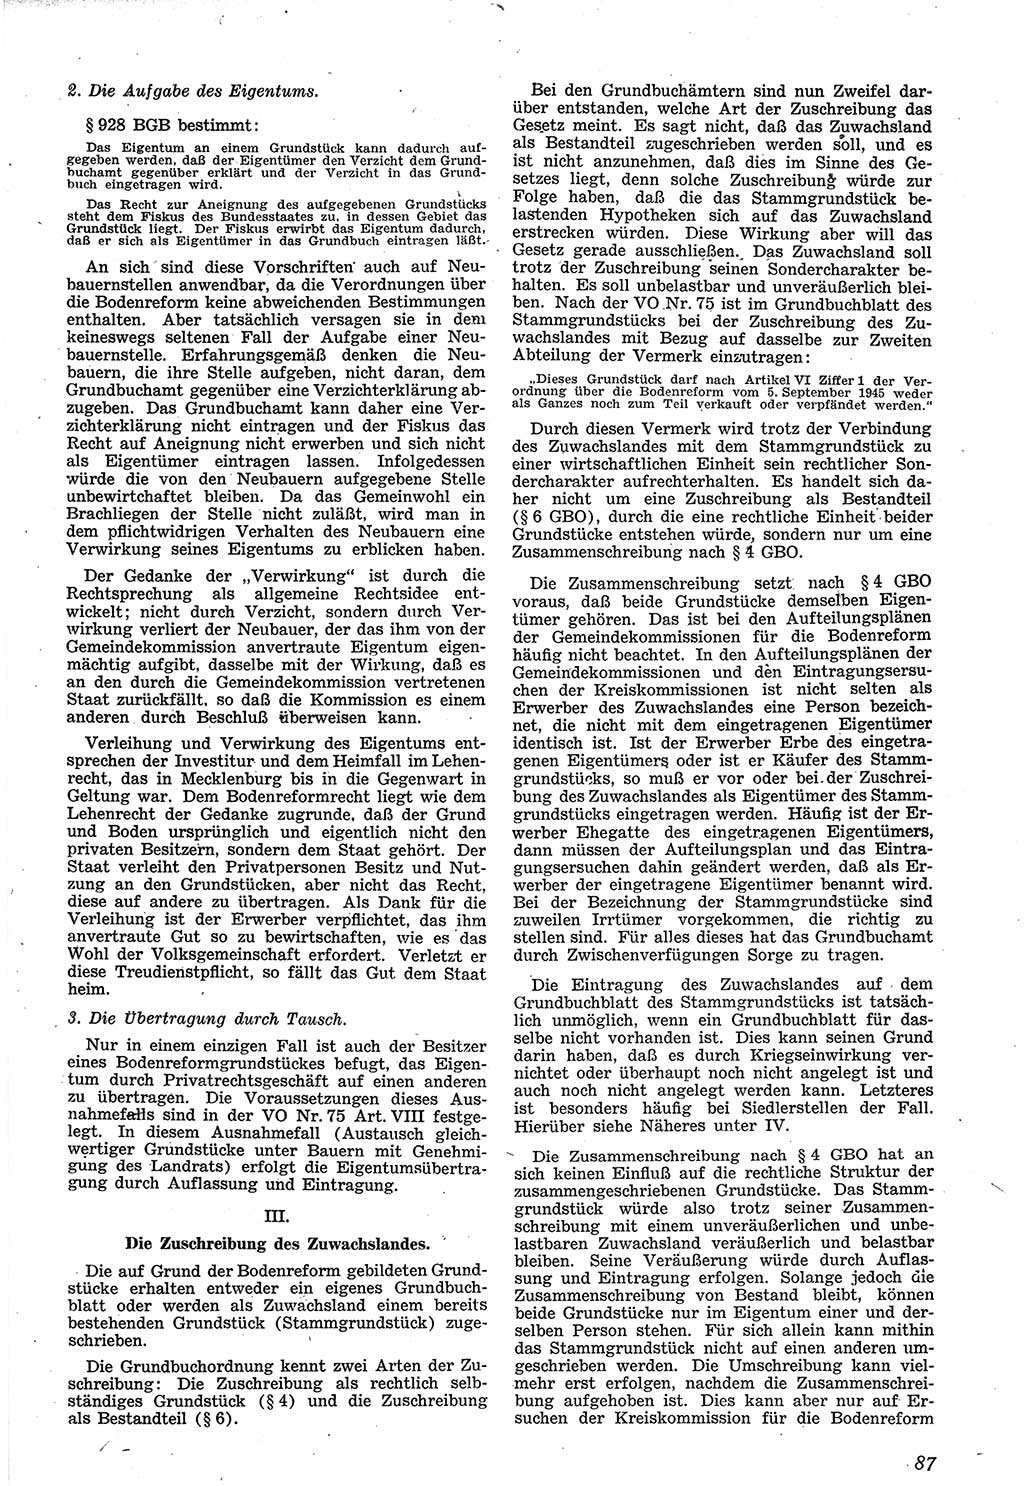 Neue Justiz (NJ), Zeitschrift für Recht und Rechtswissenschaft [Sowjetische Besatzungszone (SBZ) Deutschland], 1. Jahrgang 1947, Seite 87 (NJ SBZ Dtl. 1947, S. 87)